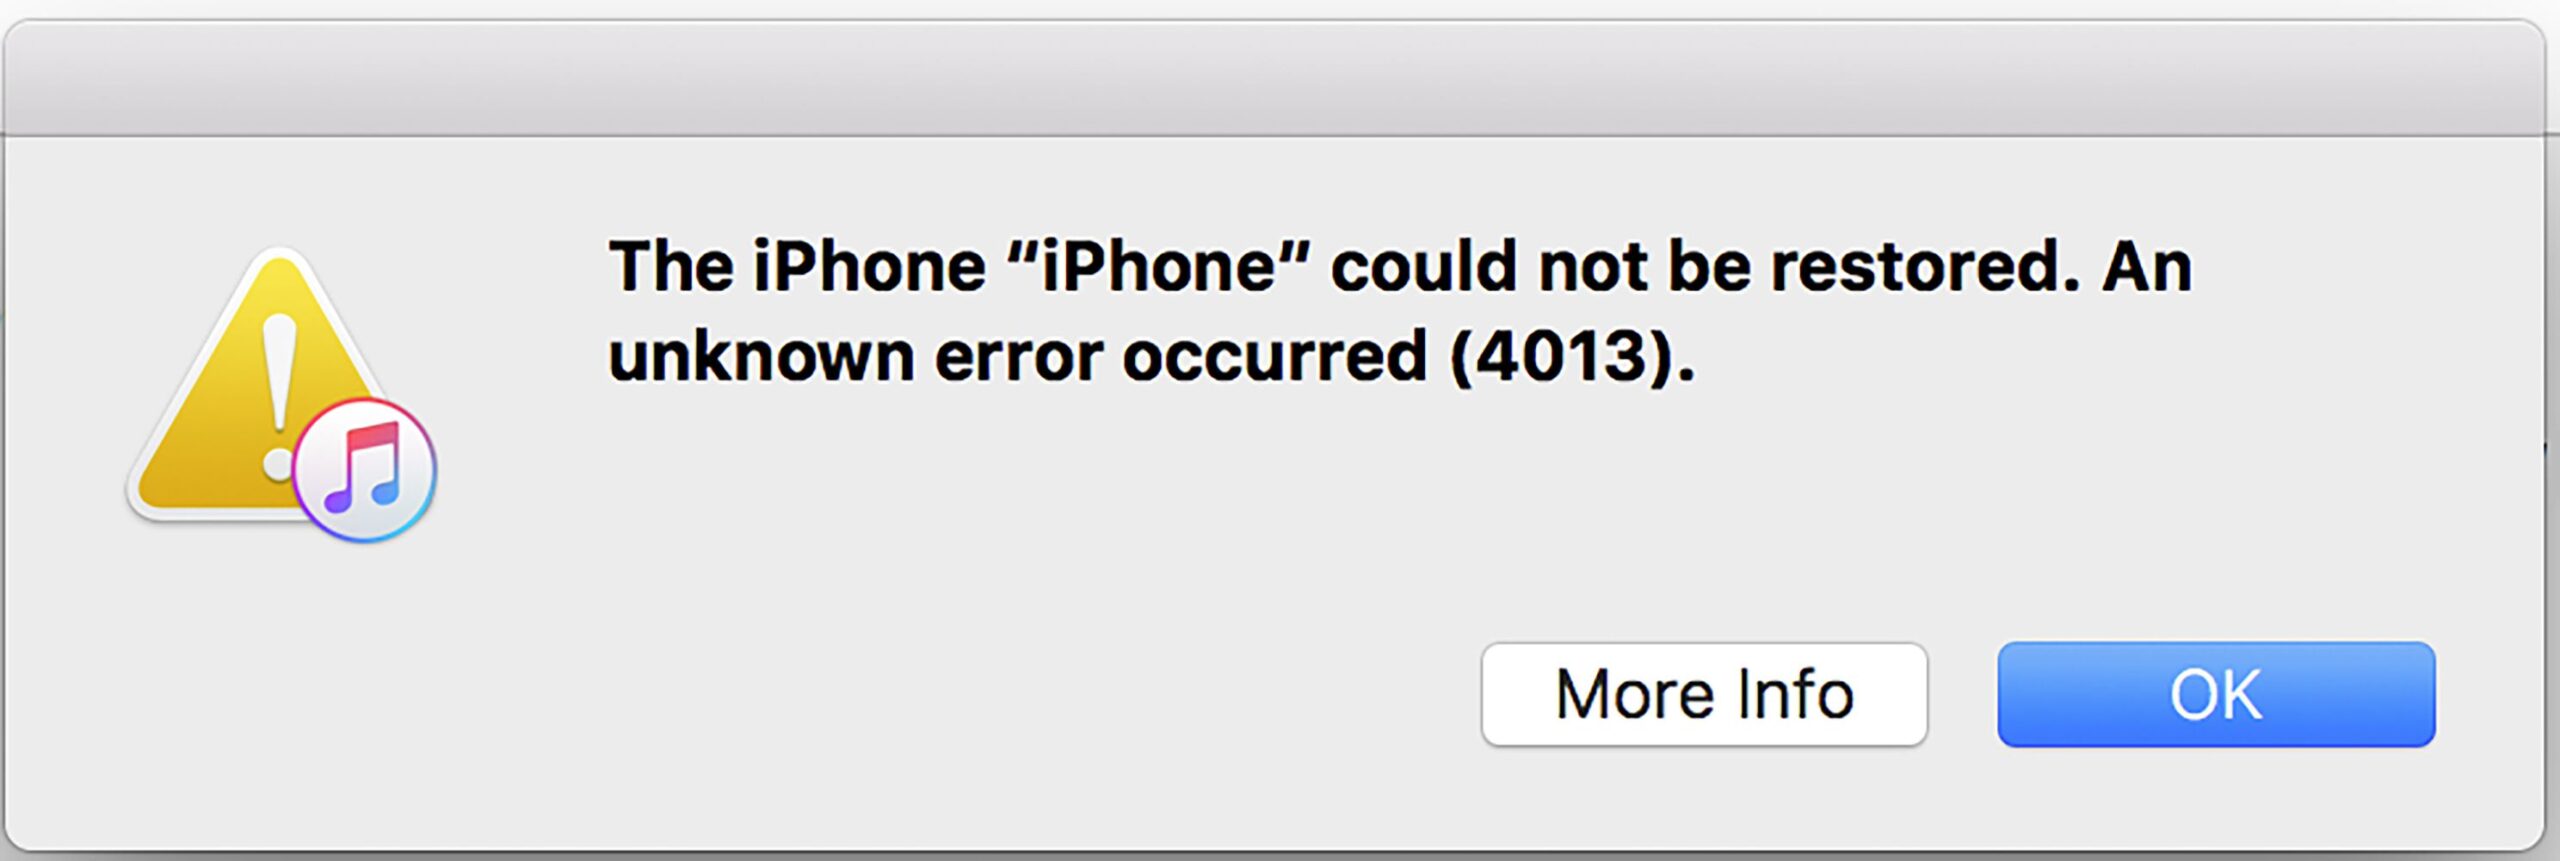 Не удалось восстановить айфон ошибка. Ошибка iphone. Не удаётся восстановить iphone. Произошла Неизвестная ошибка айфон. Ошибка 4013 при восстановлении iphone.